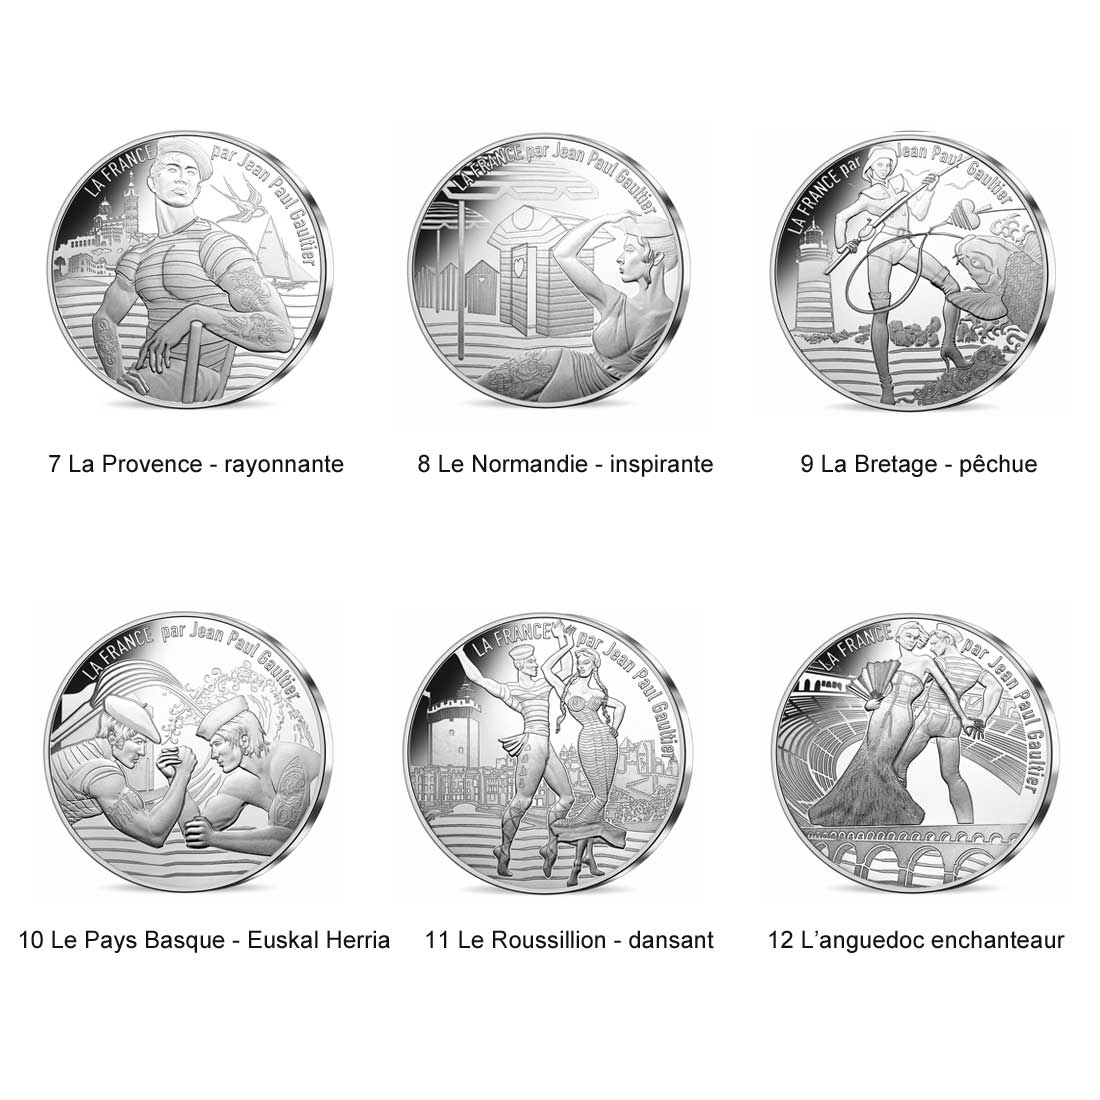 4/24 Silver #189351 MS France 2017 65-70 10 Euro Jean Paul Gaultier 